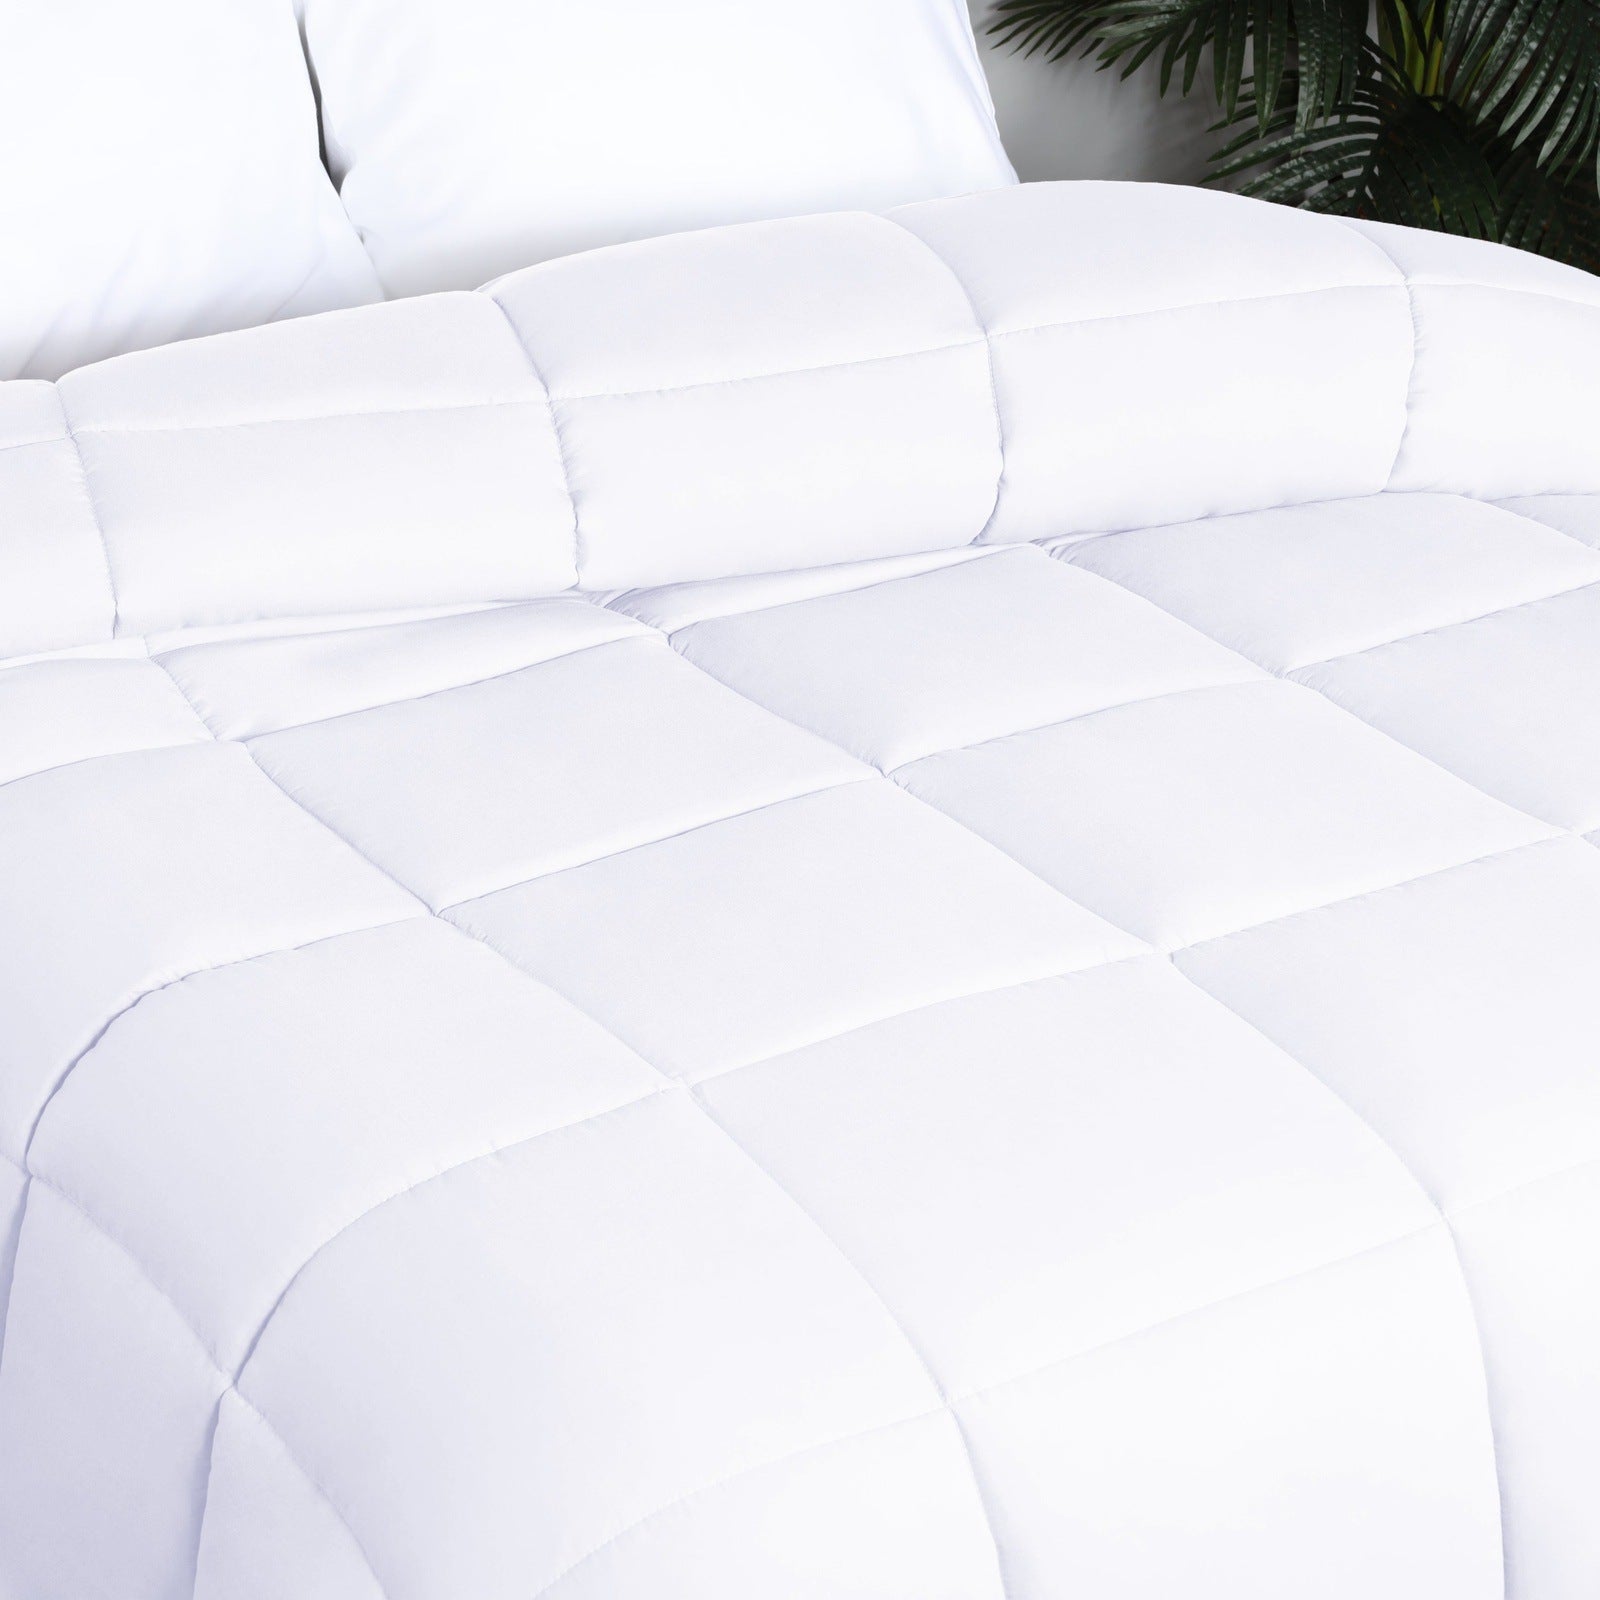 Superior Solid All Season Down Alternative Microfiber Comforter - White